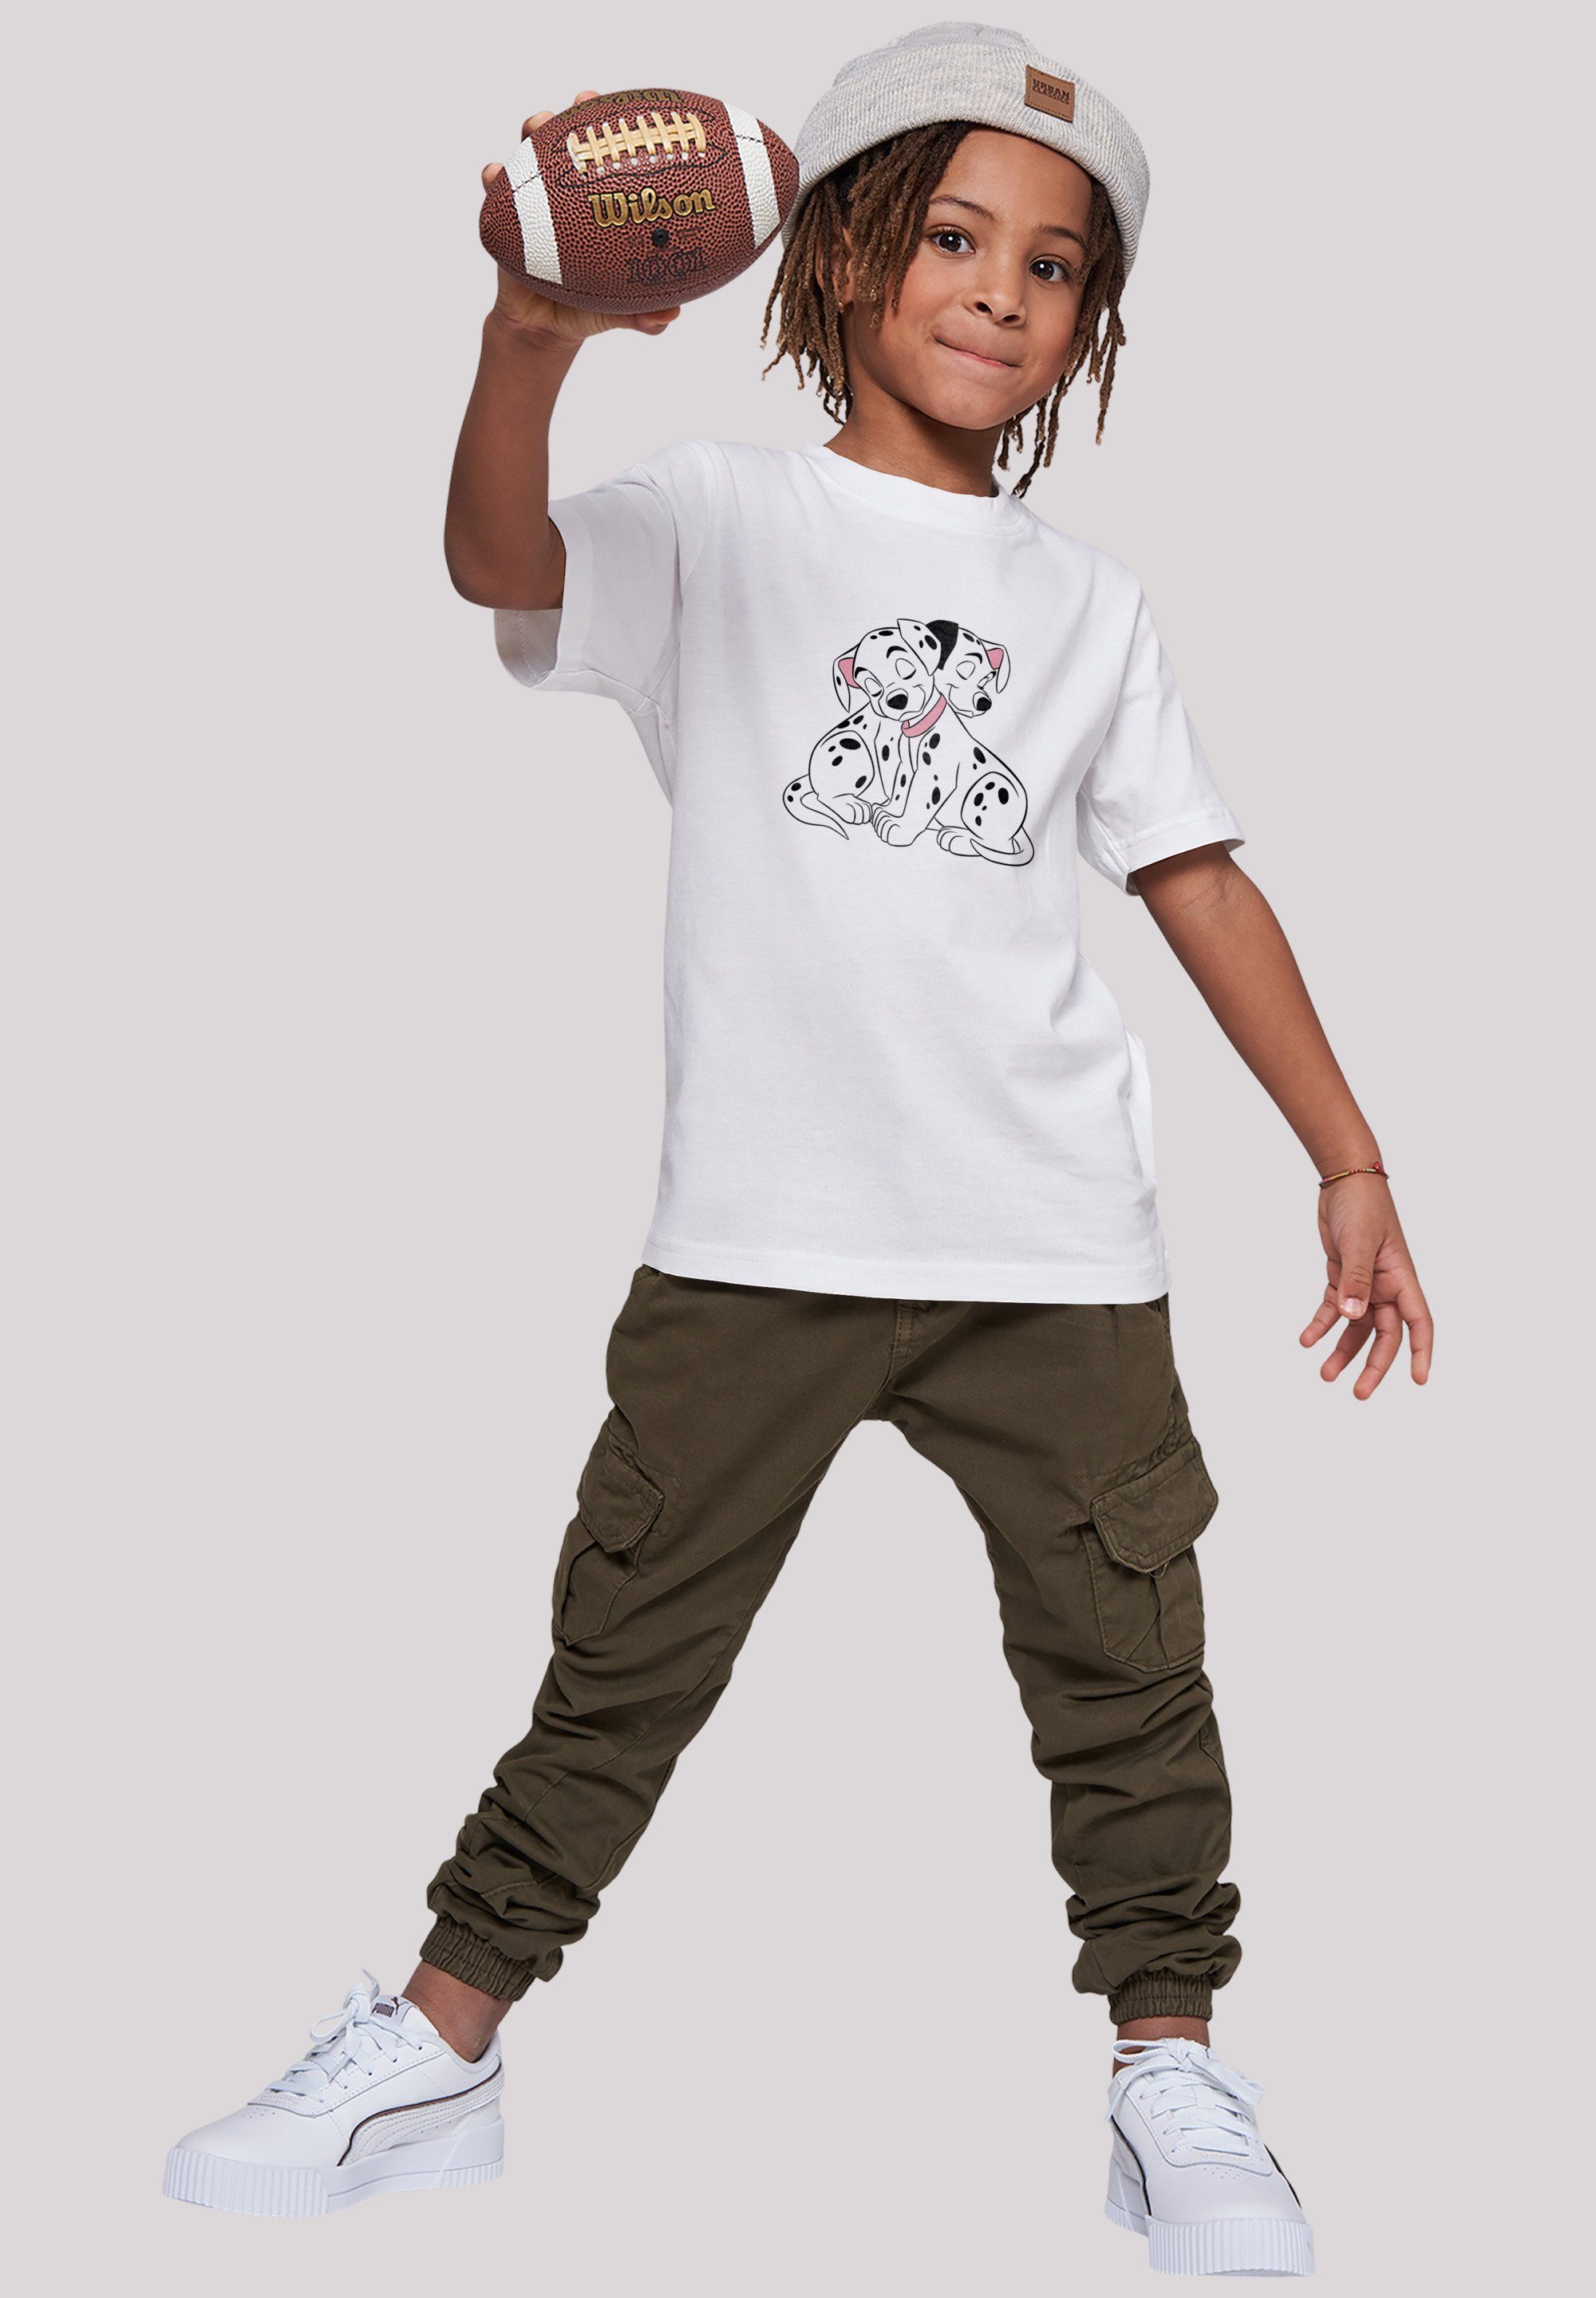 F4NT4STIC 101 Disney Puppy Merch,Jungen,Mädchen,Bedruckt Love Dalmatiner T-Shirt Kinder,Premium Unisex